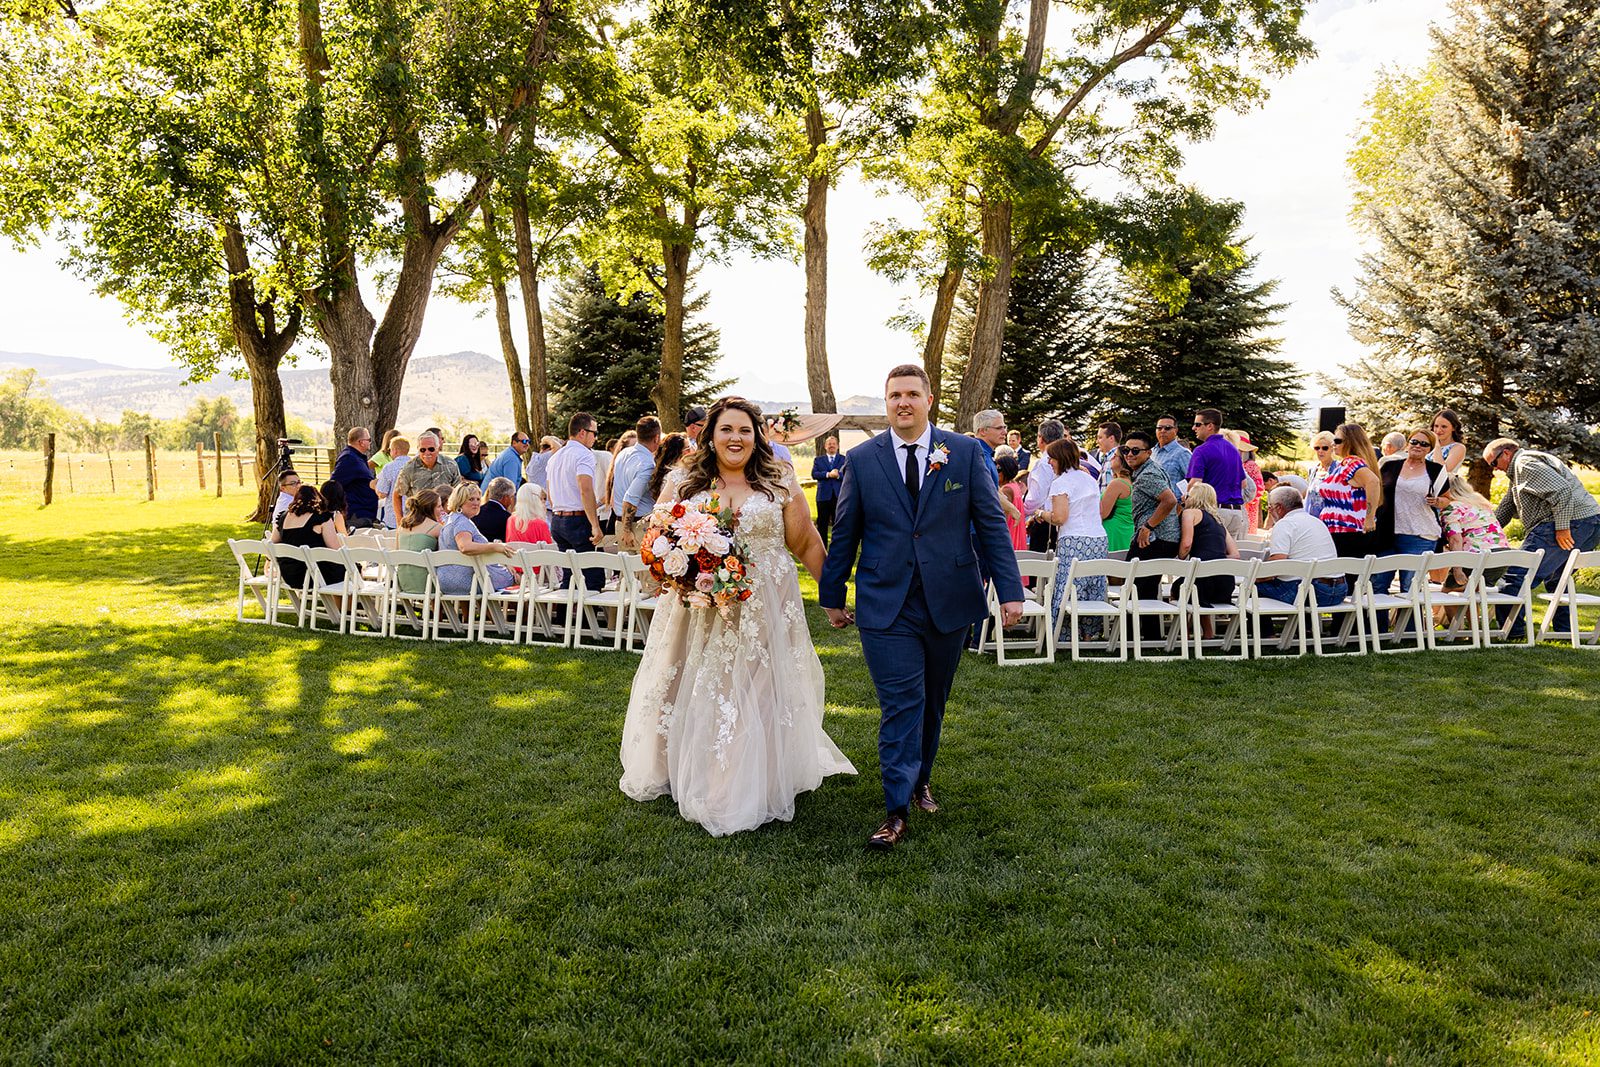 Shupe homestead wedding in Colorado